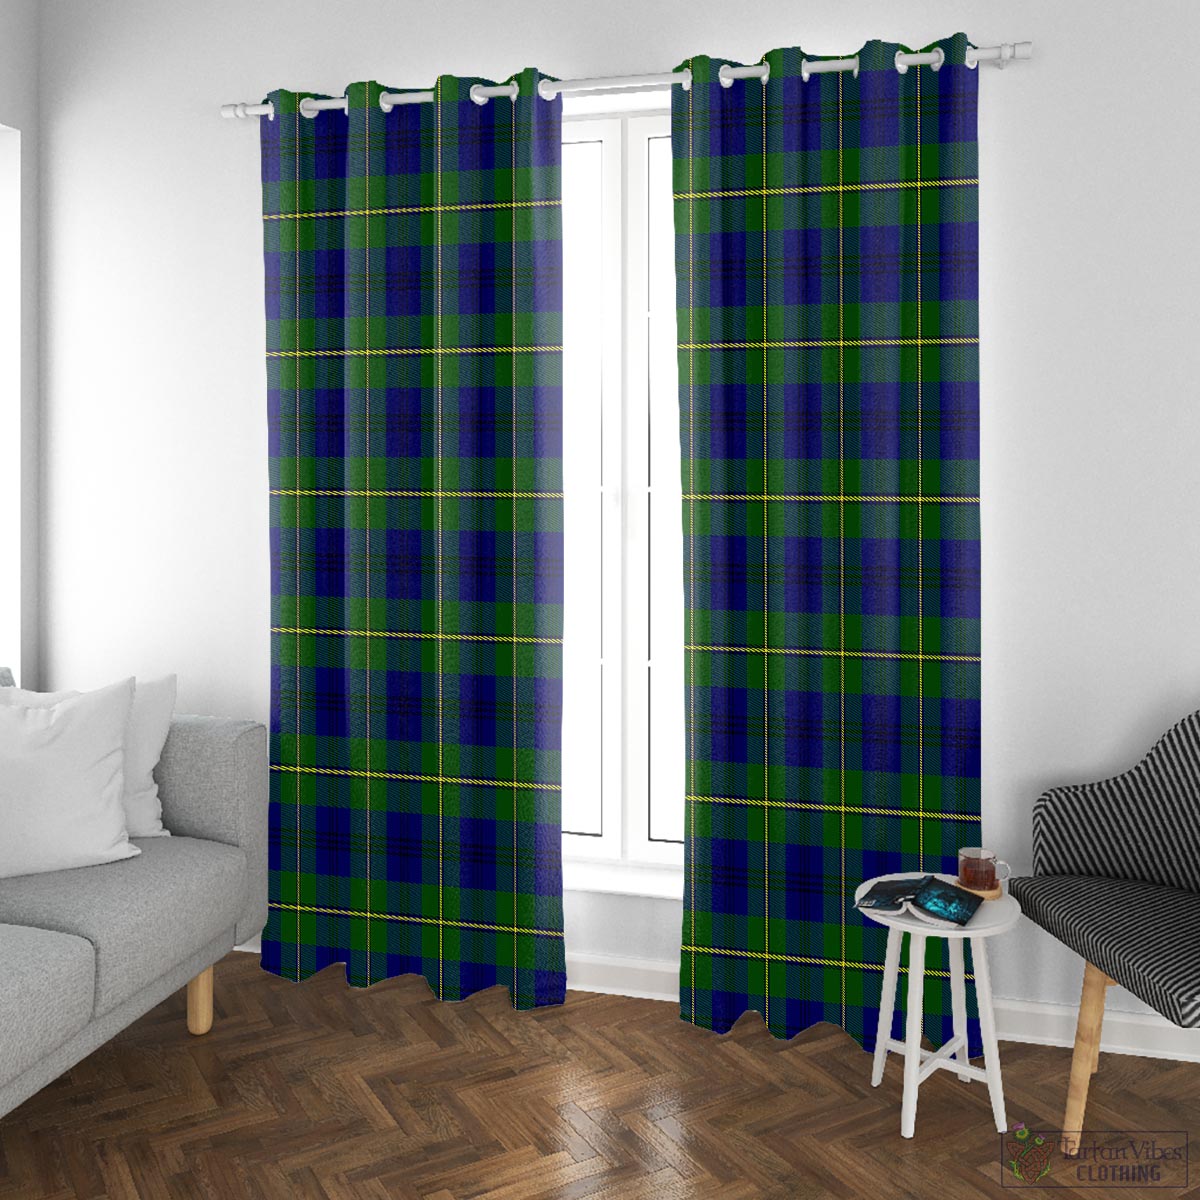 Johnstone-Johnston Modern Tartan Window Curtain